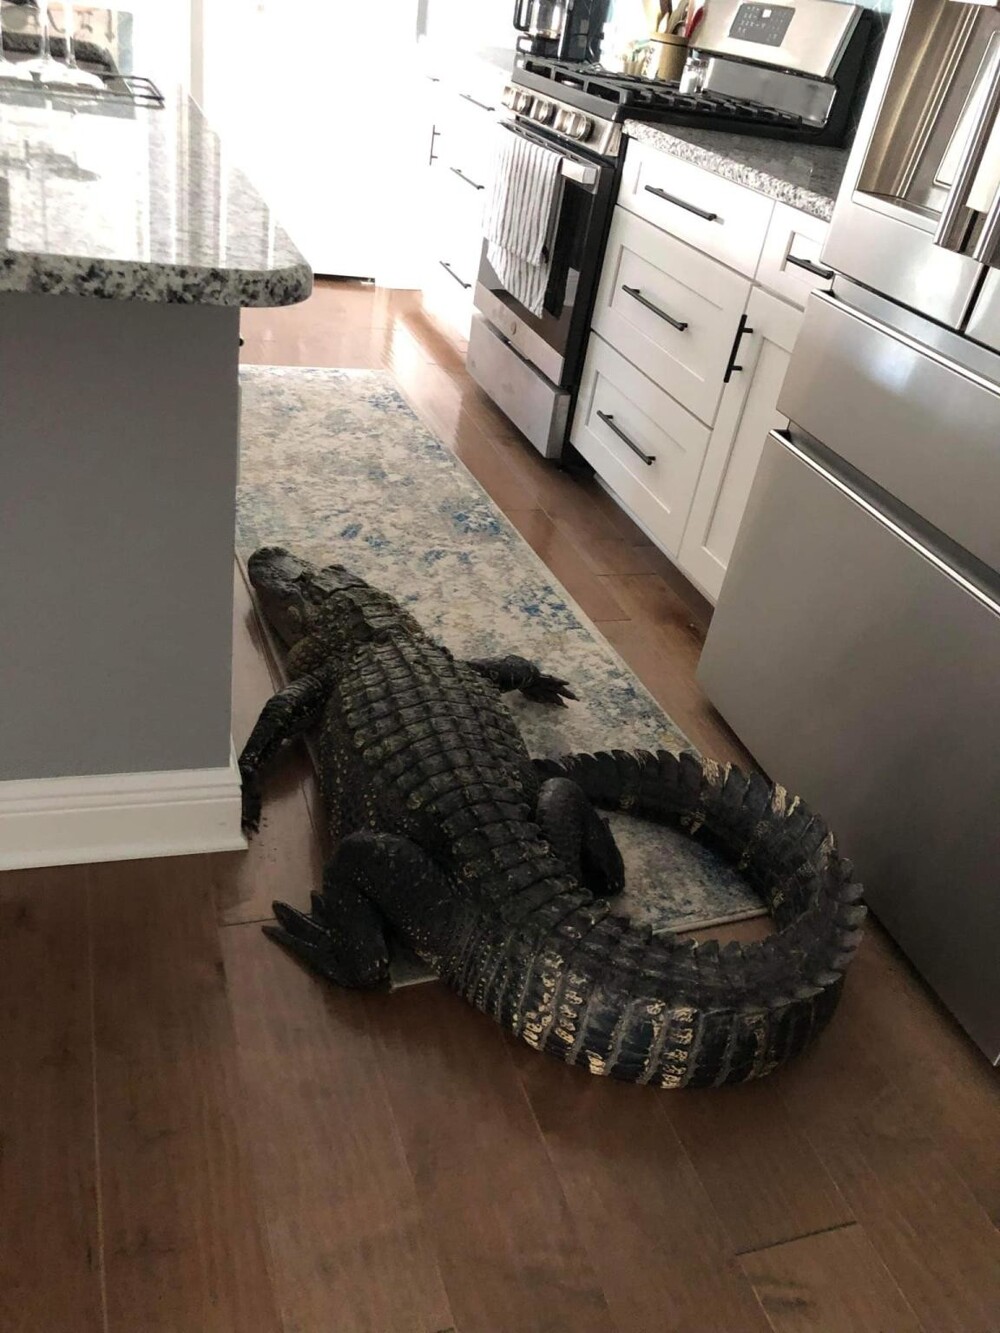 Жительница Флориды обнаружила на кухне 2,5-метрового аллигатора